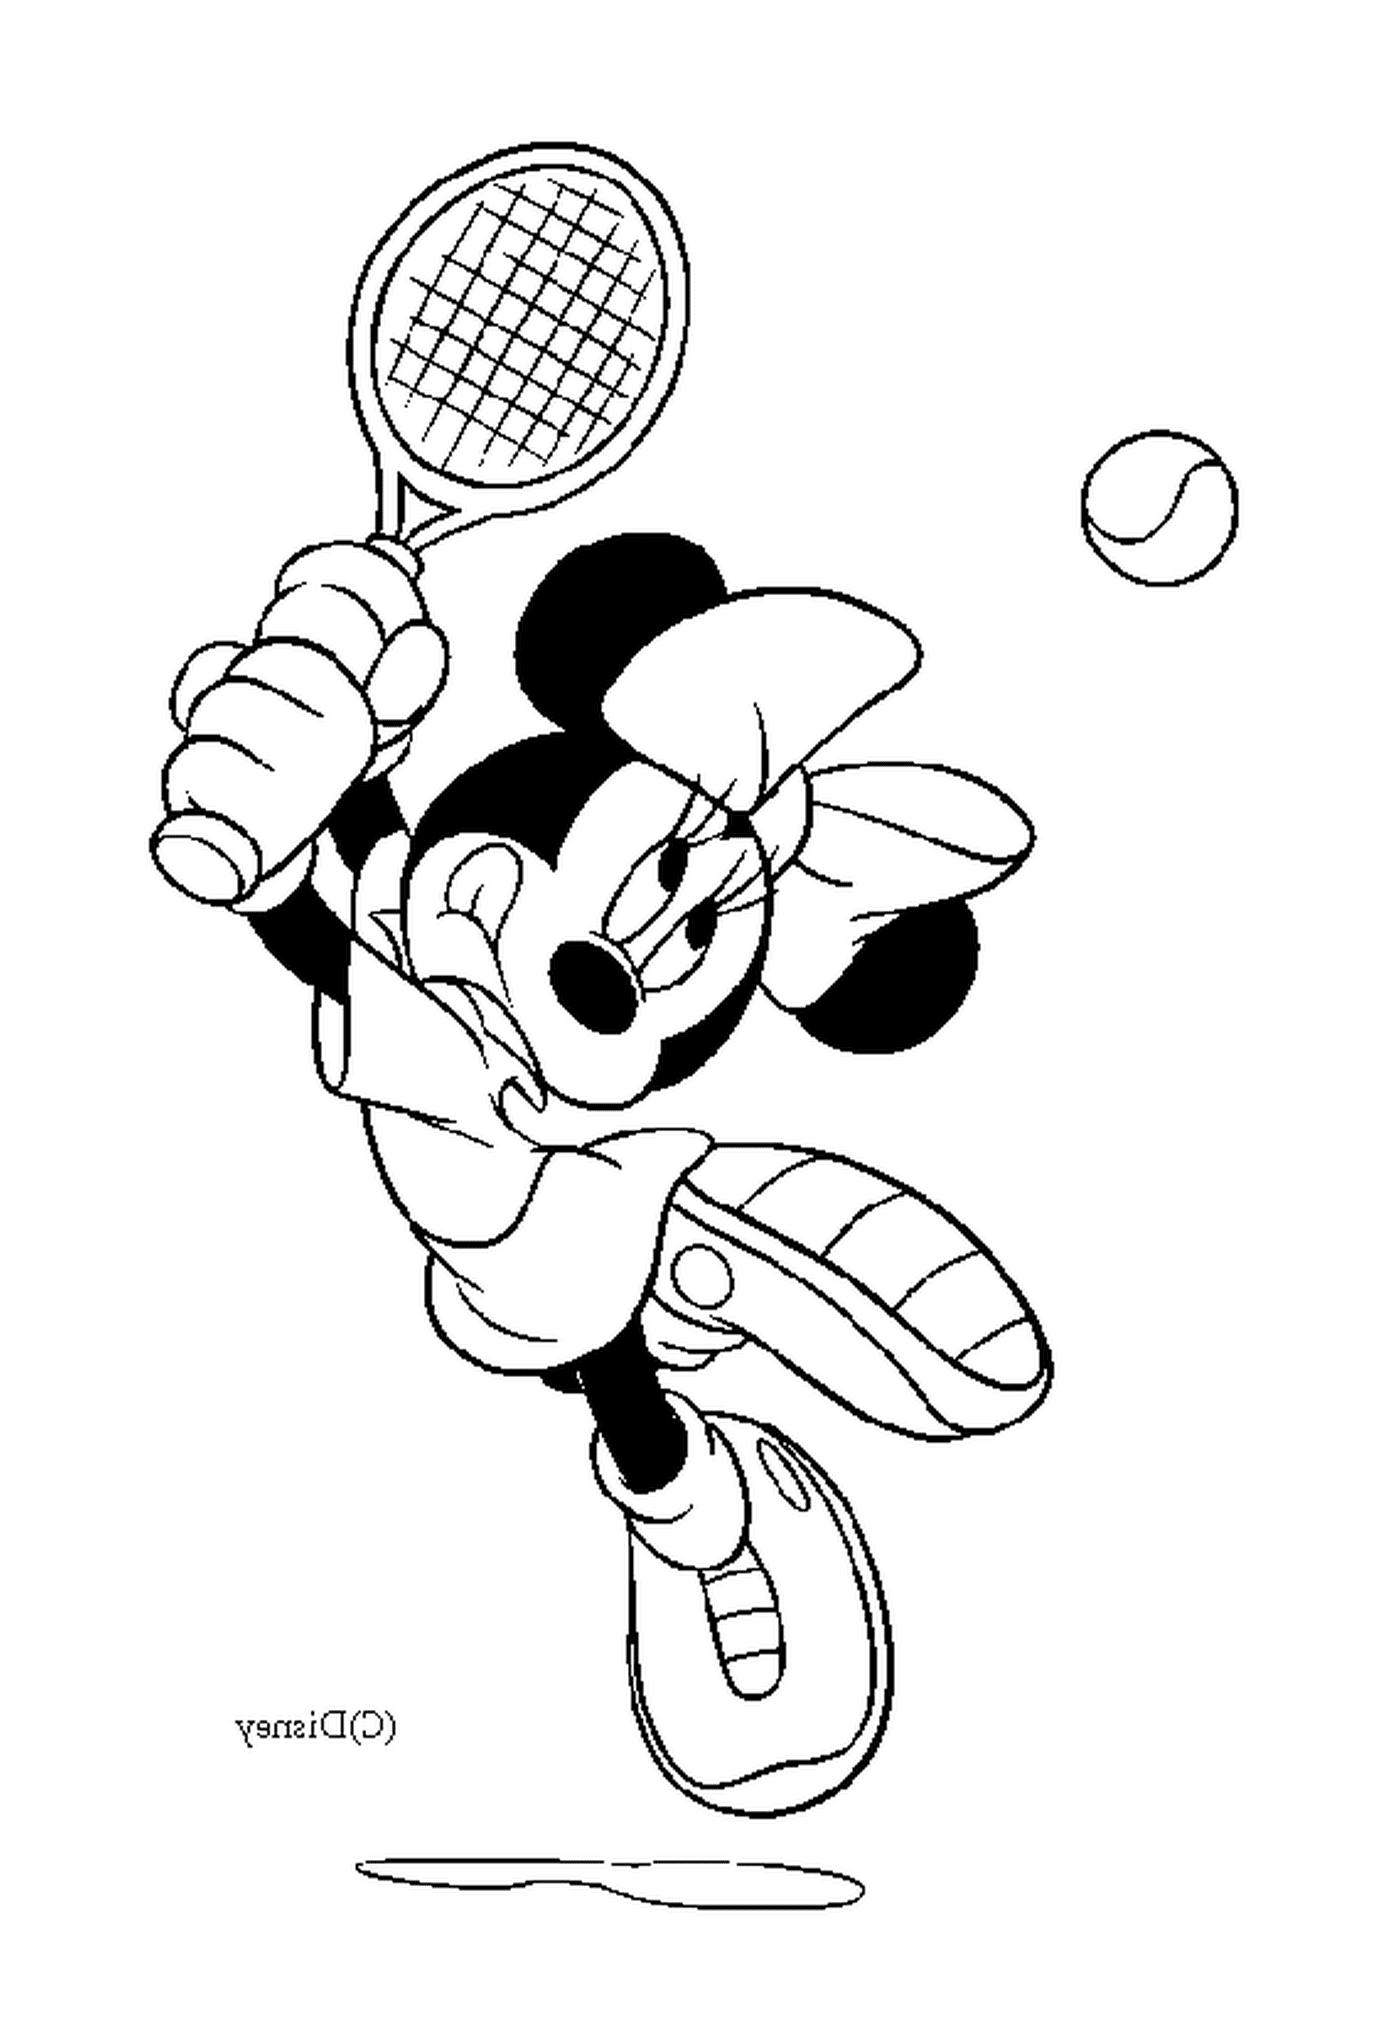   Minnie joue au tennis 